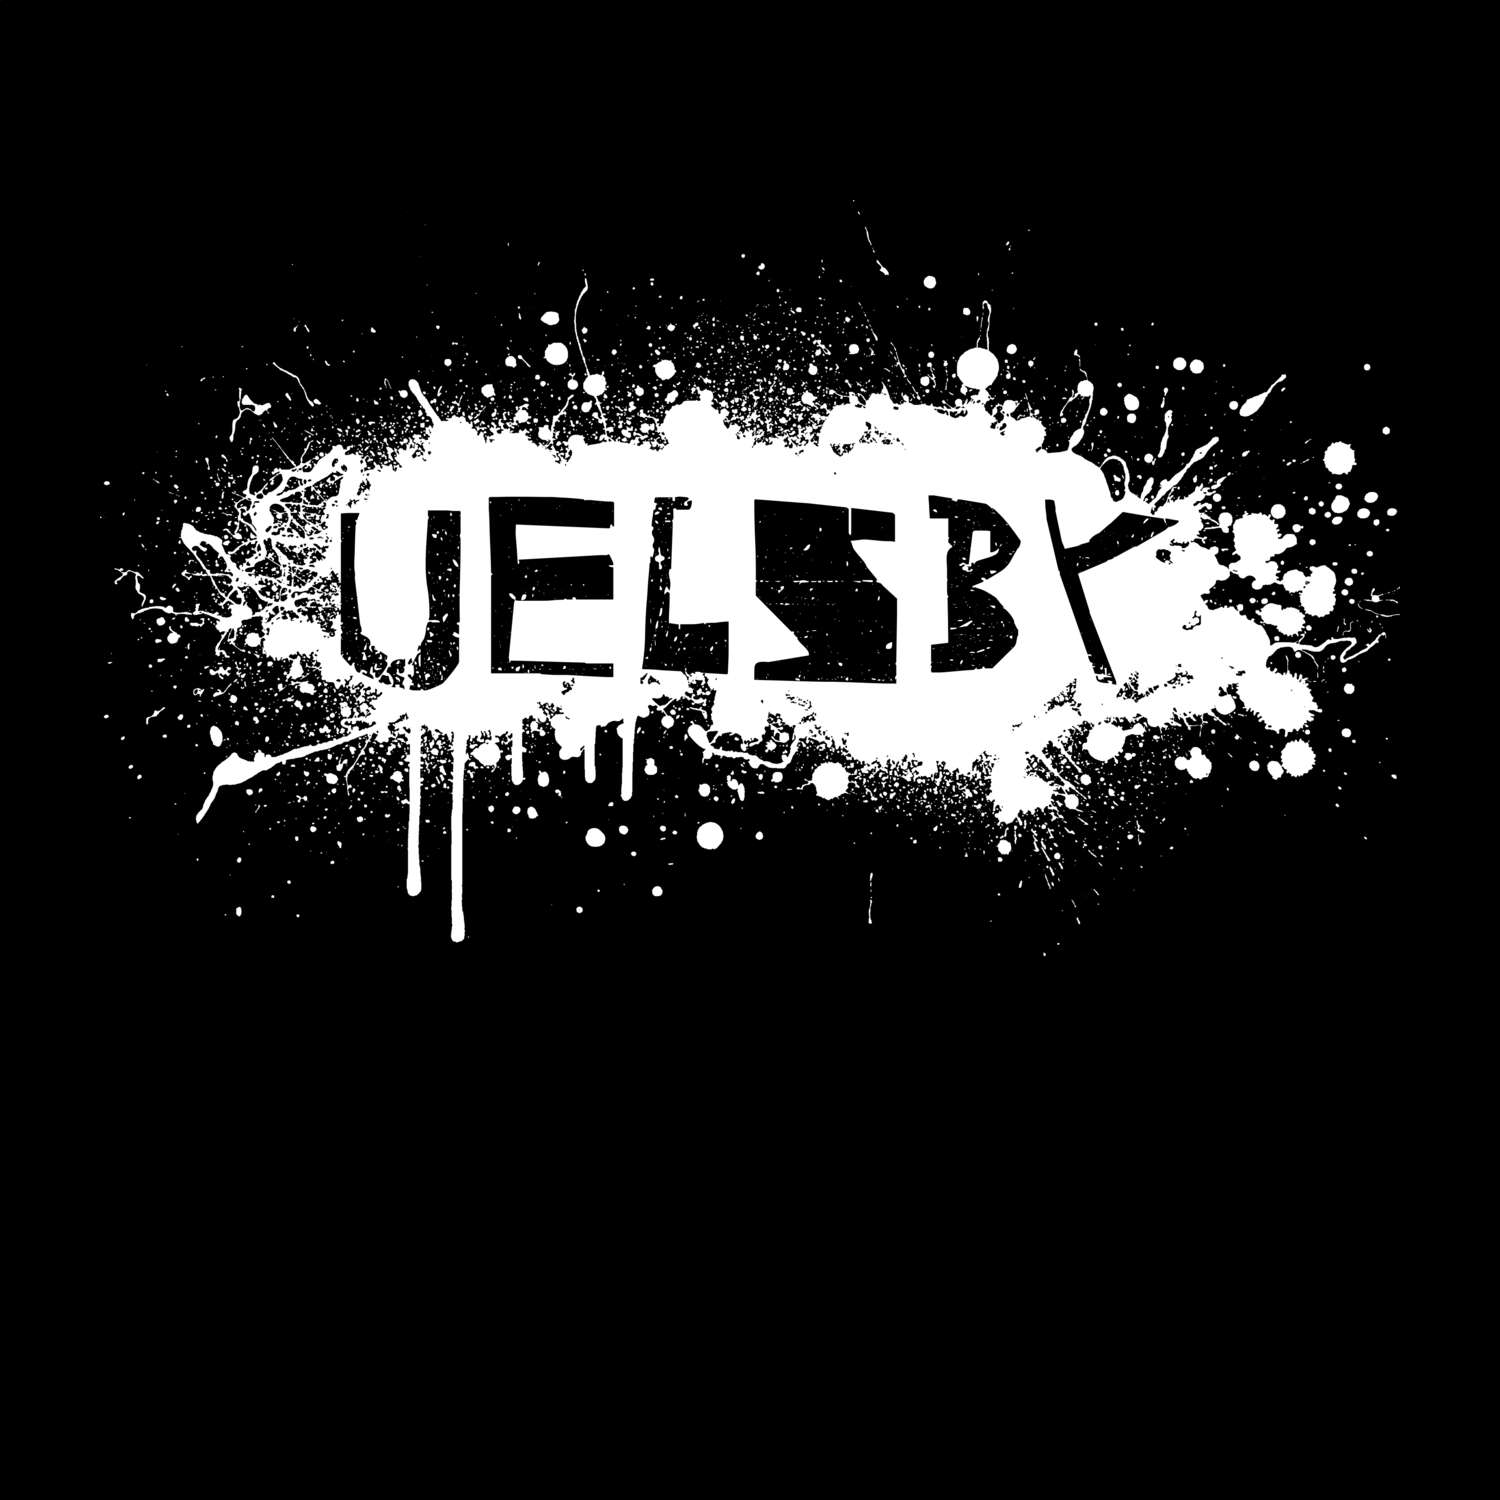 Uelsby T-Shirt »Paint Splash Punk«